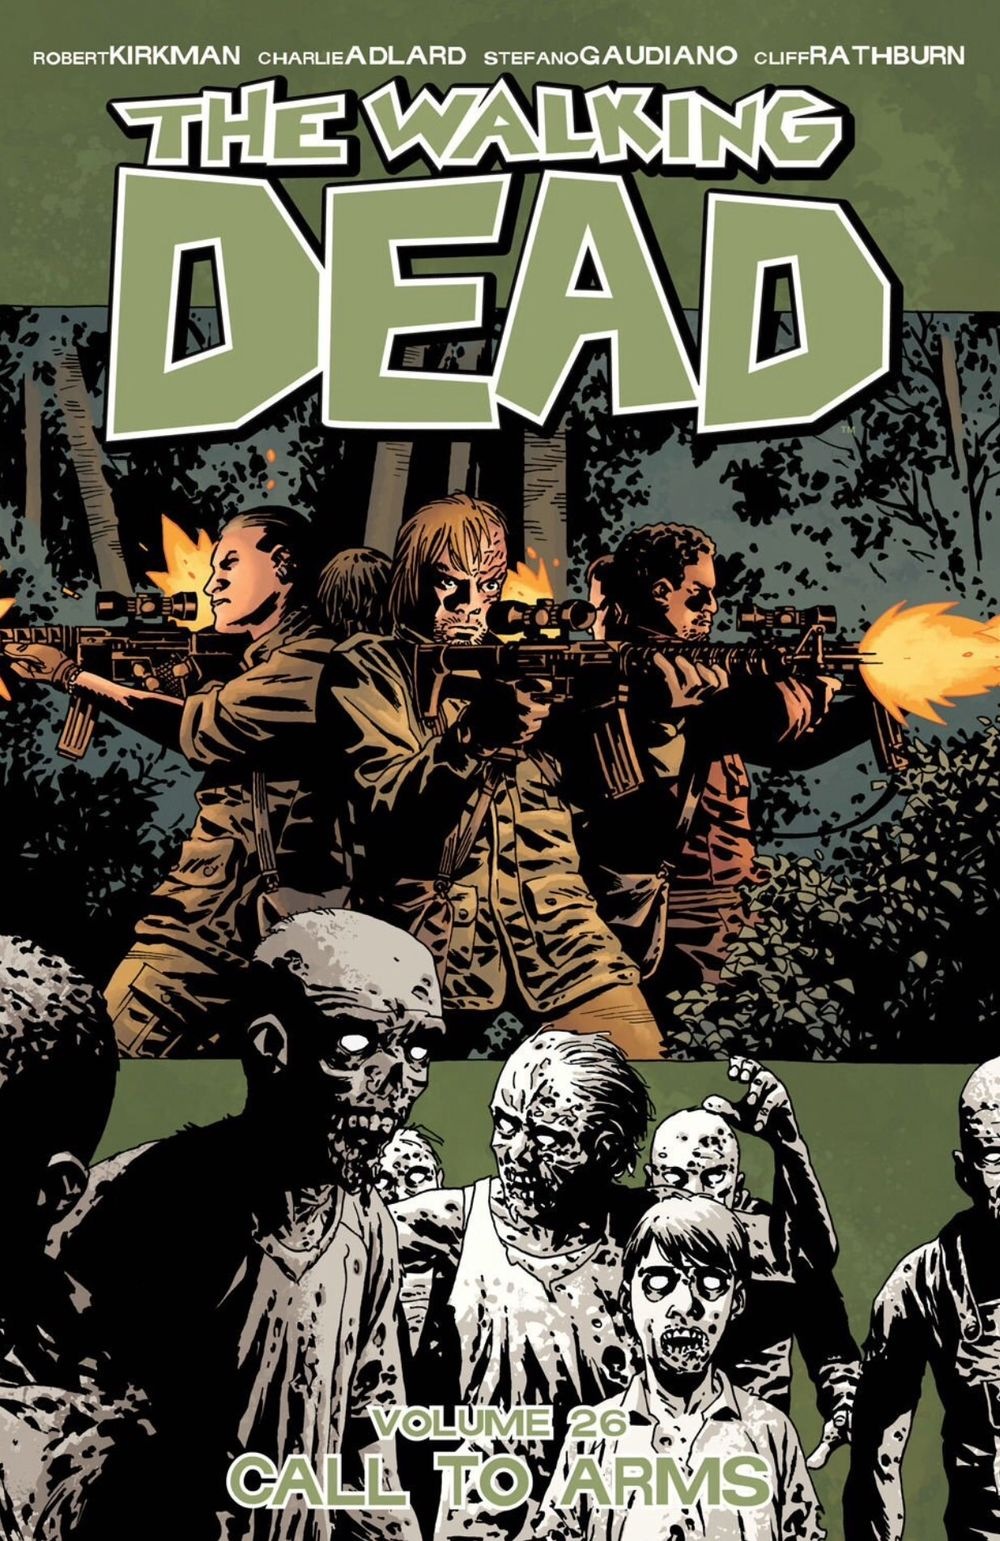 Amazoncom: The Walking Dead, Vol 1: Days Gone Bye